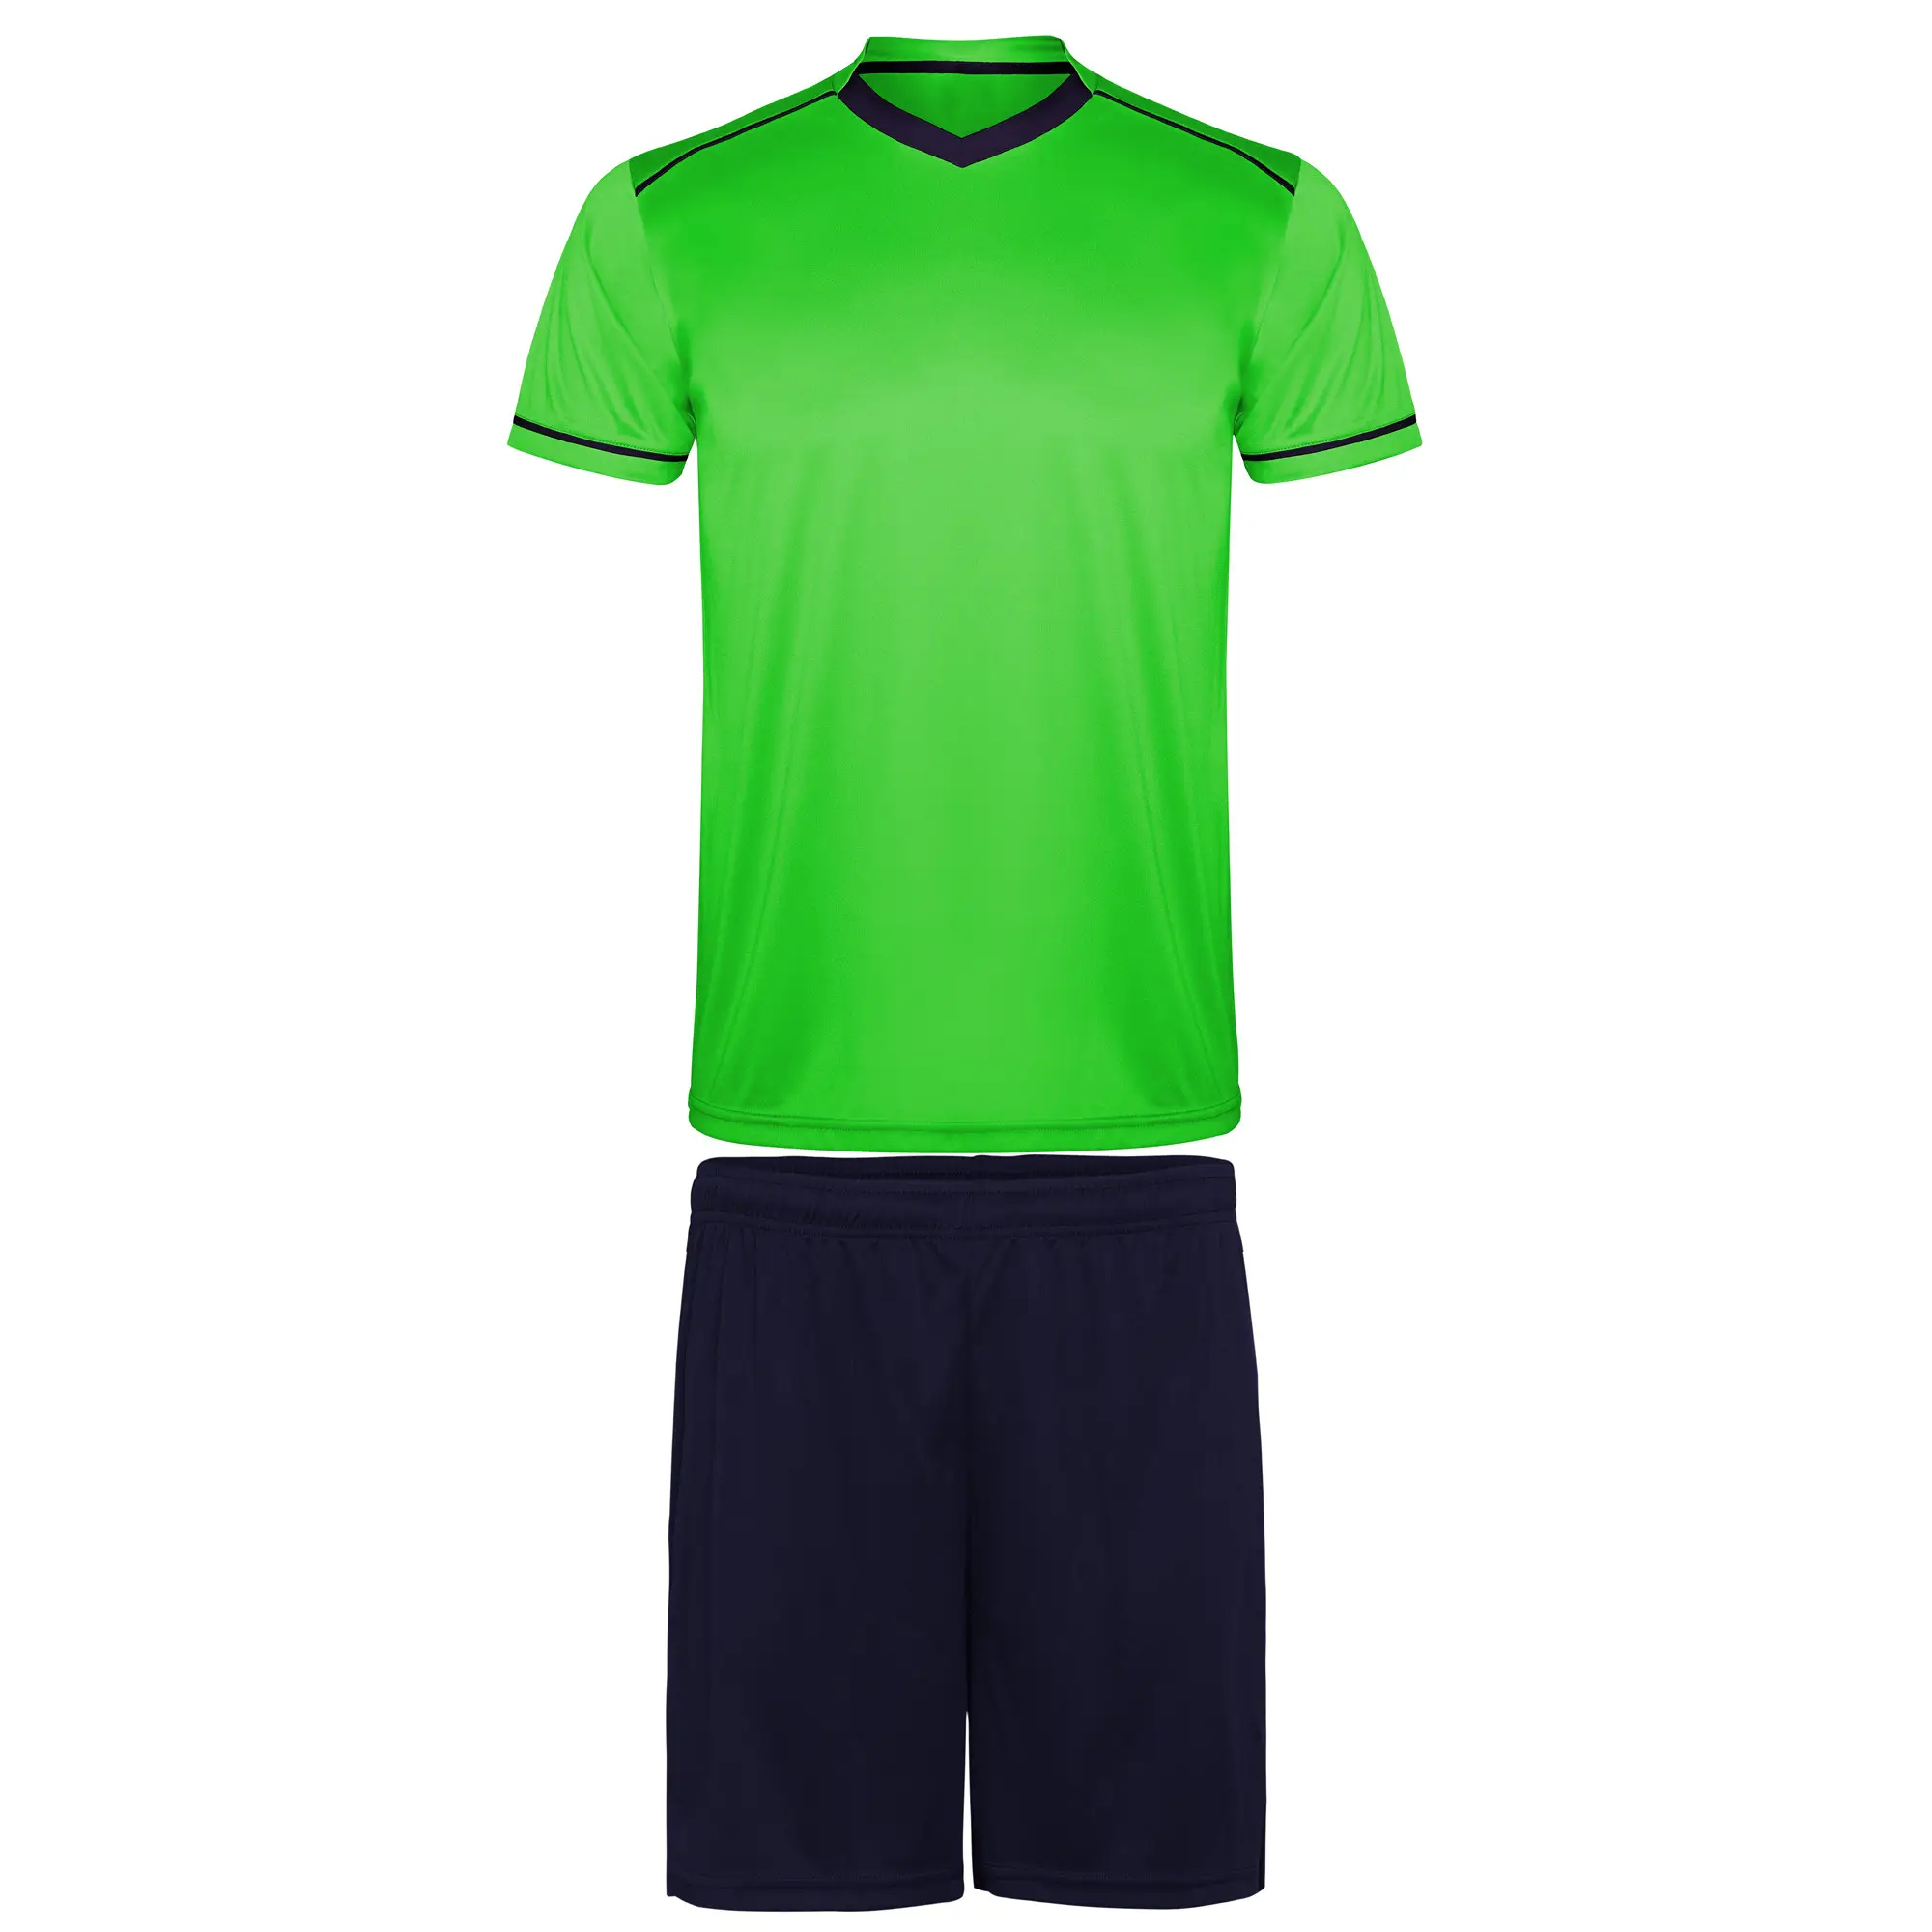 Дышащая Низкая минимальная партия, изготовленная на заказ футболка, Джерси, набор для футбола, оптовая продажа, Футбольная форма + одежда, Футбольная Униформа для продажи